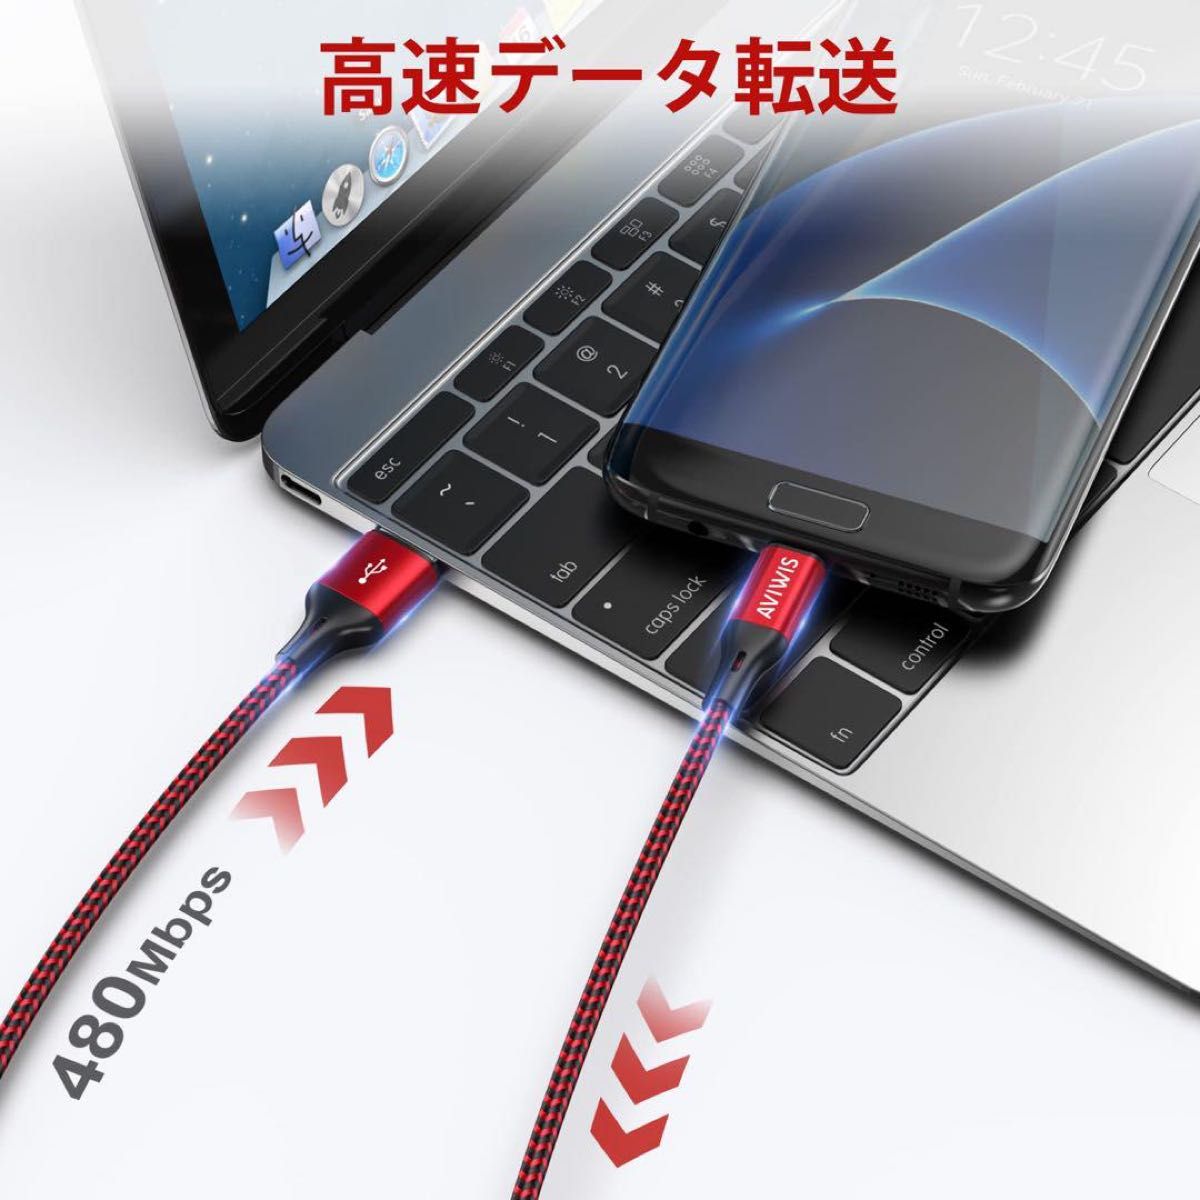 マイクロ USB ケーブル 急速充電ケーブル【2M/3本セット】Android